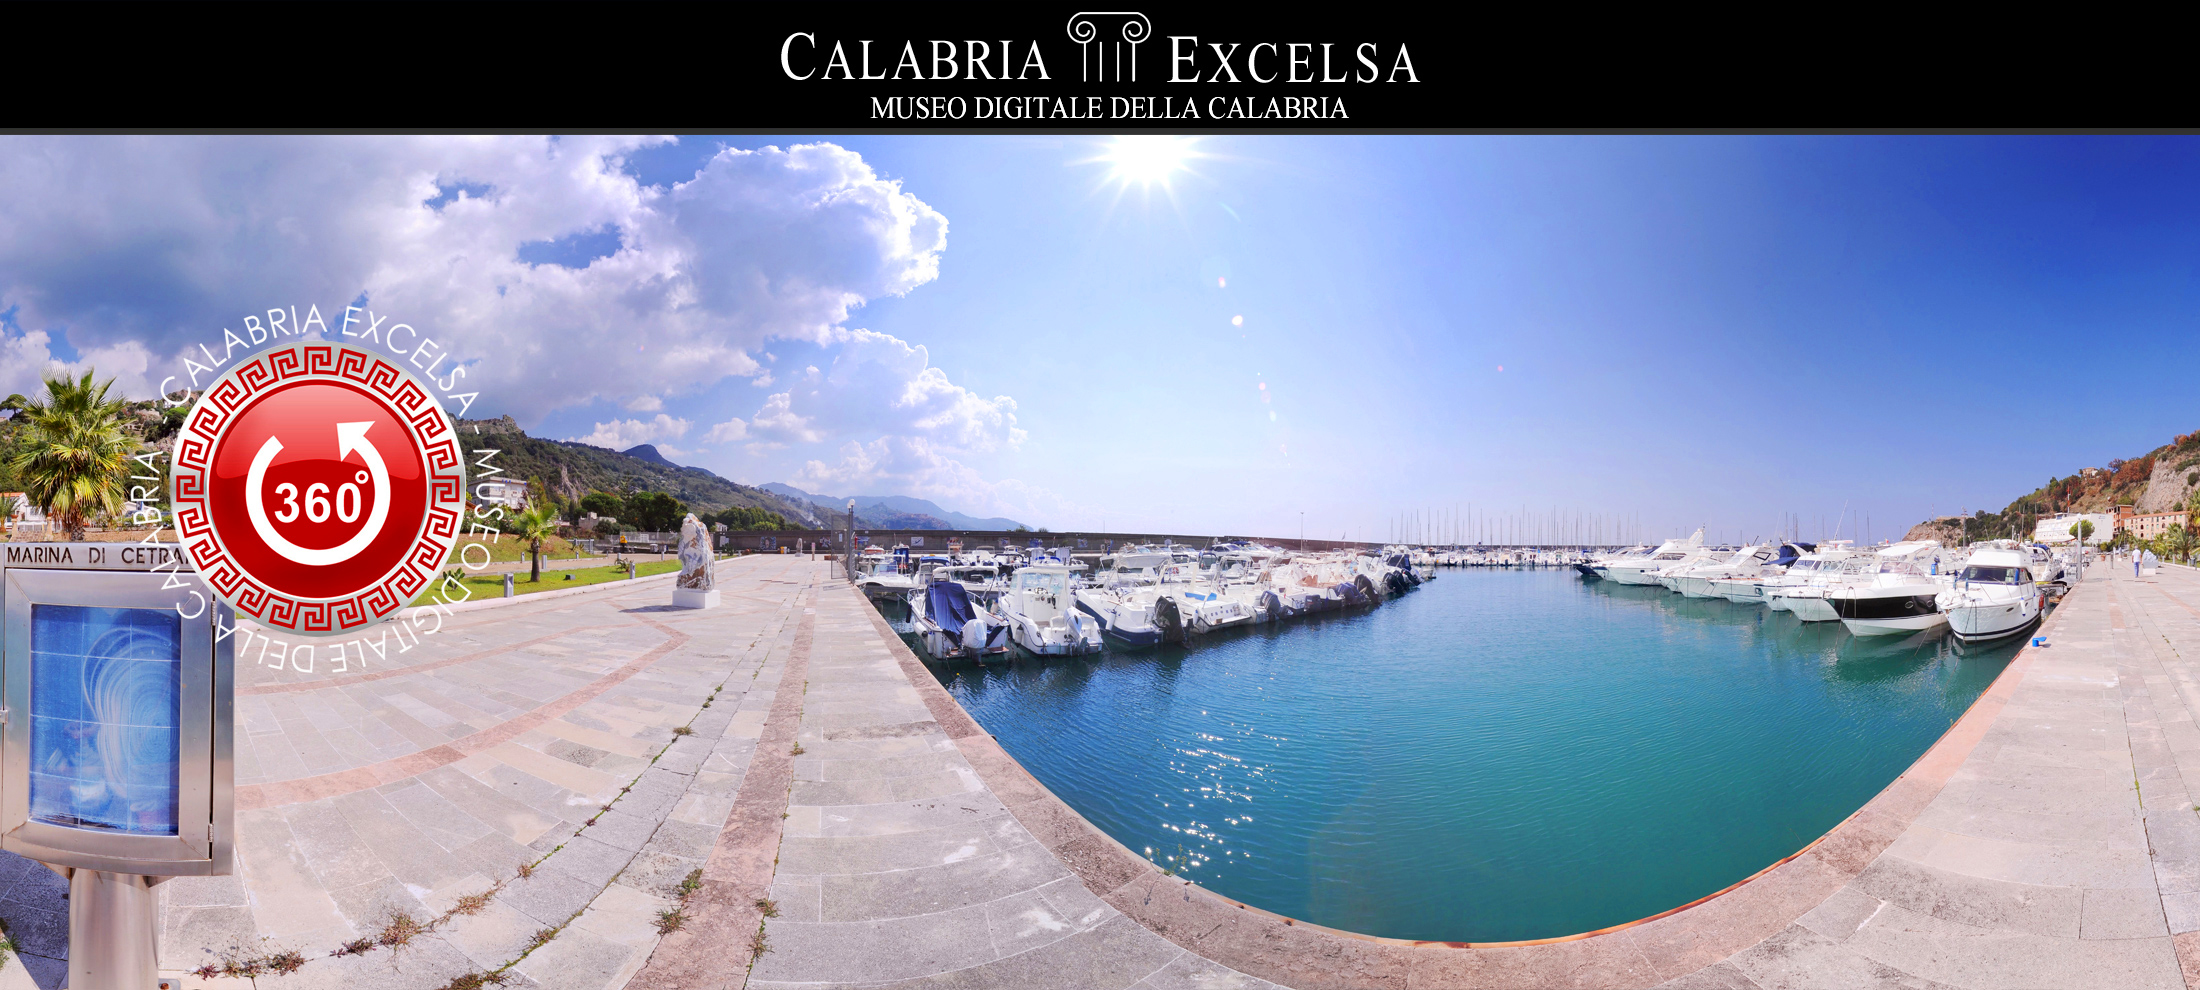 Museo Digitale della Calabria CALABRIAEXCELSA - Museo dei Brettii e del Mare di Cetraro - il Porto - Virtual 2